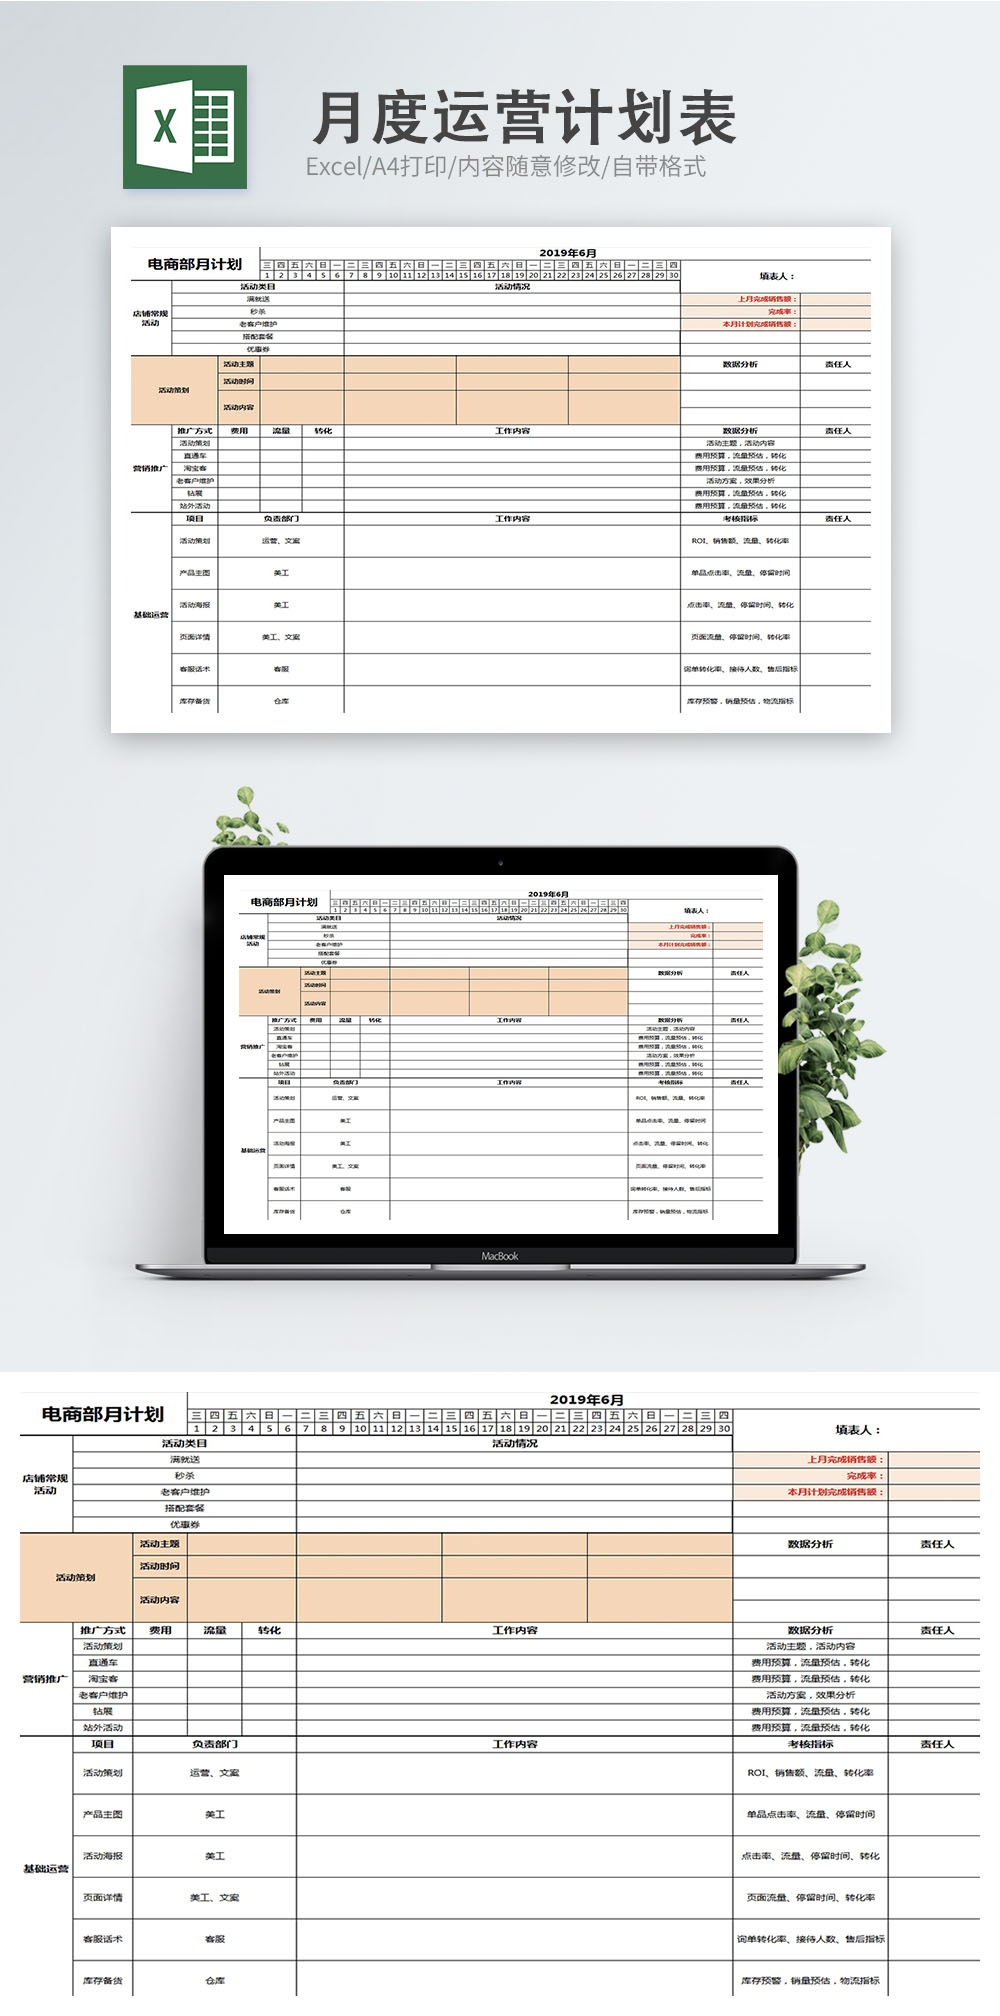 نموذج خطة عمل شهرية Excel